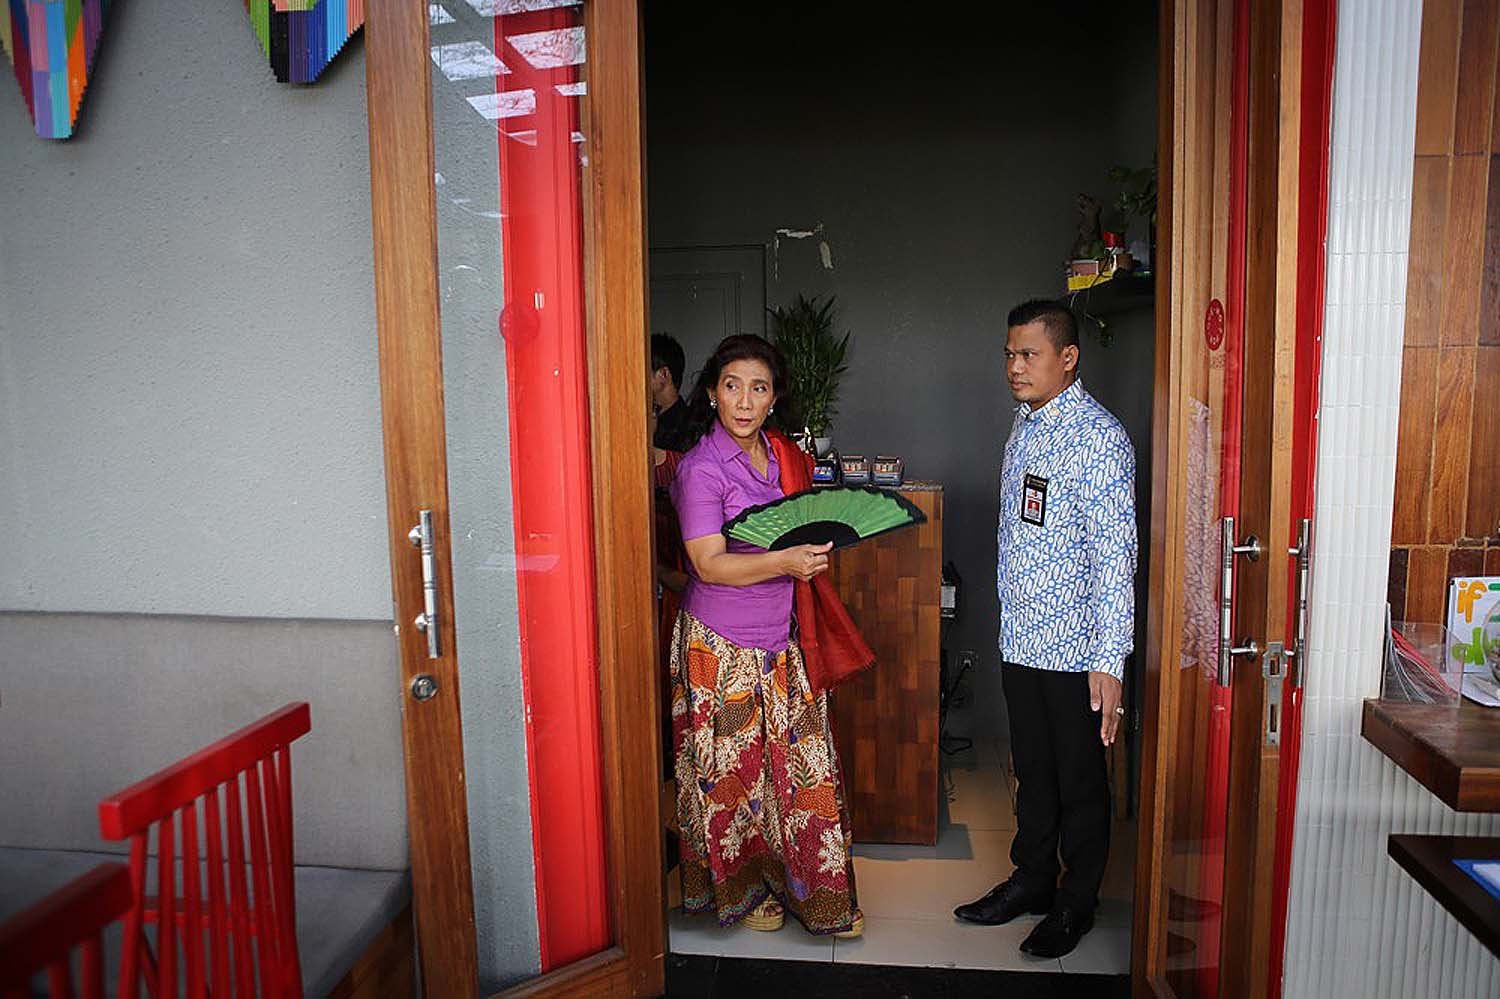 Menteri Kelautan dan Perikanan, Susi Pudjiastuti didampingi ajudan berjalan memasuki acara diskusi yang diselenggarakan oleh Katadata, KBR dan Hukum Online di Jakarta.